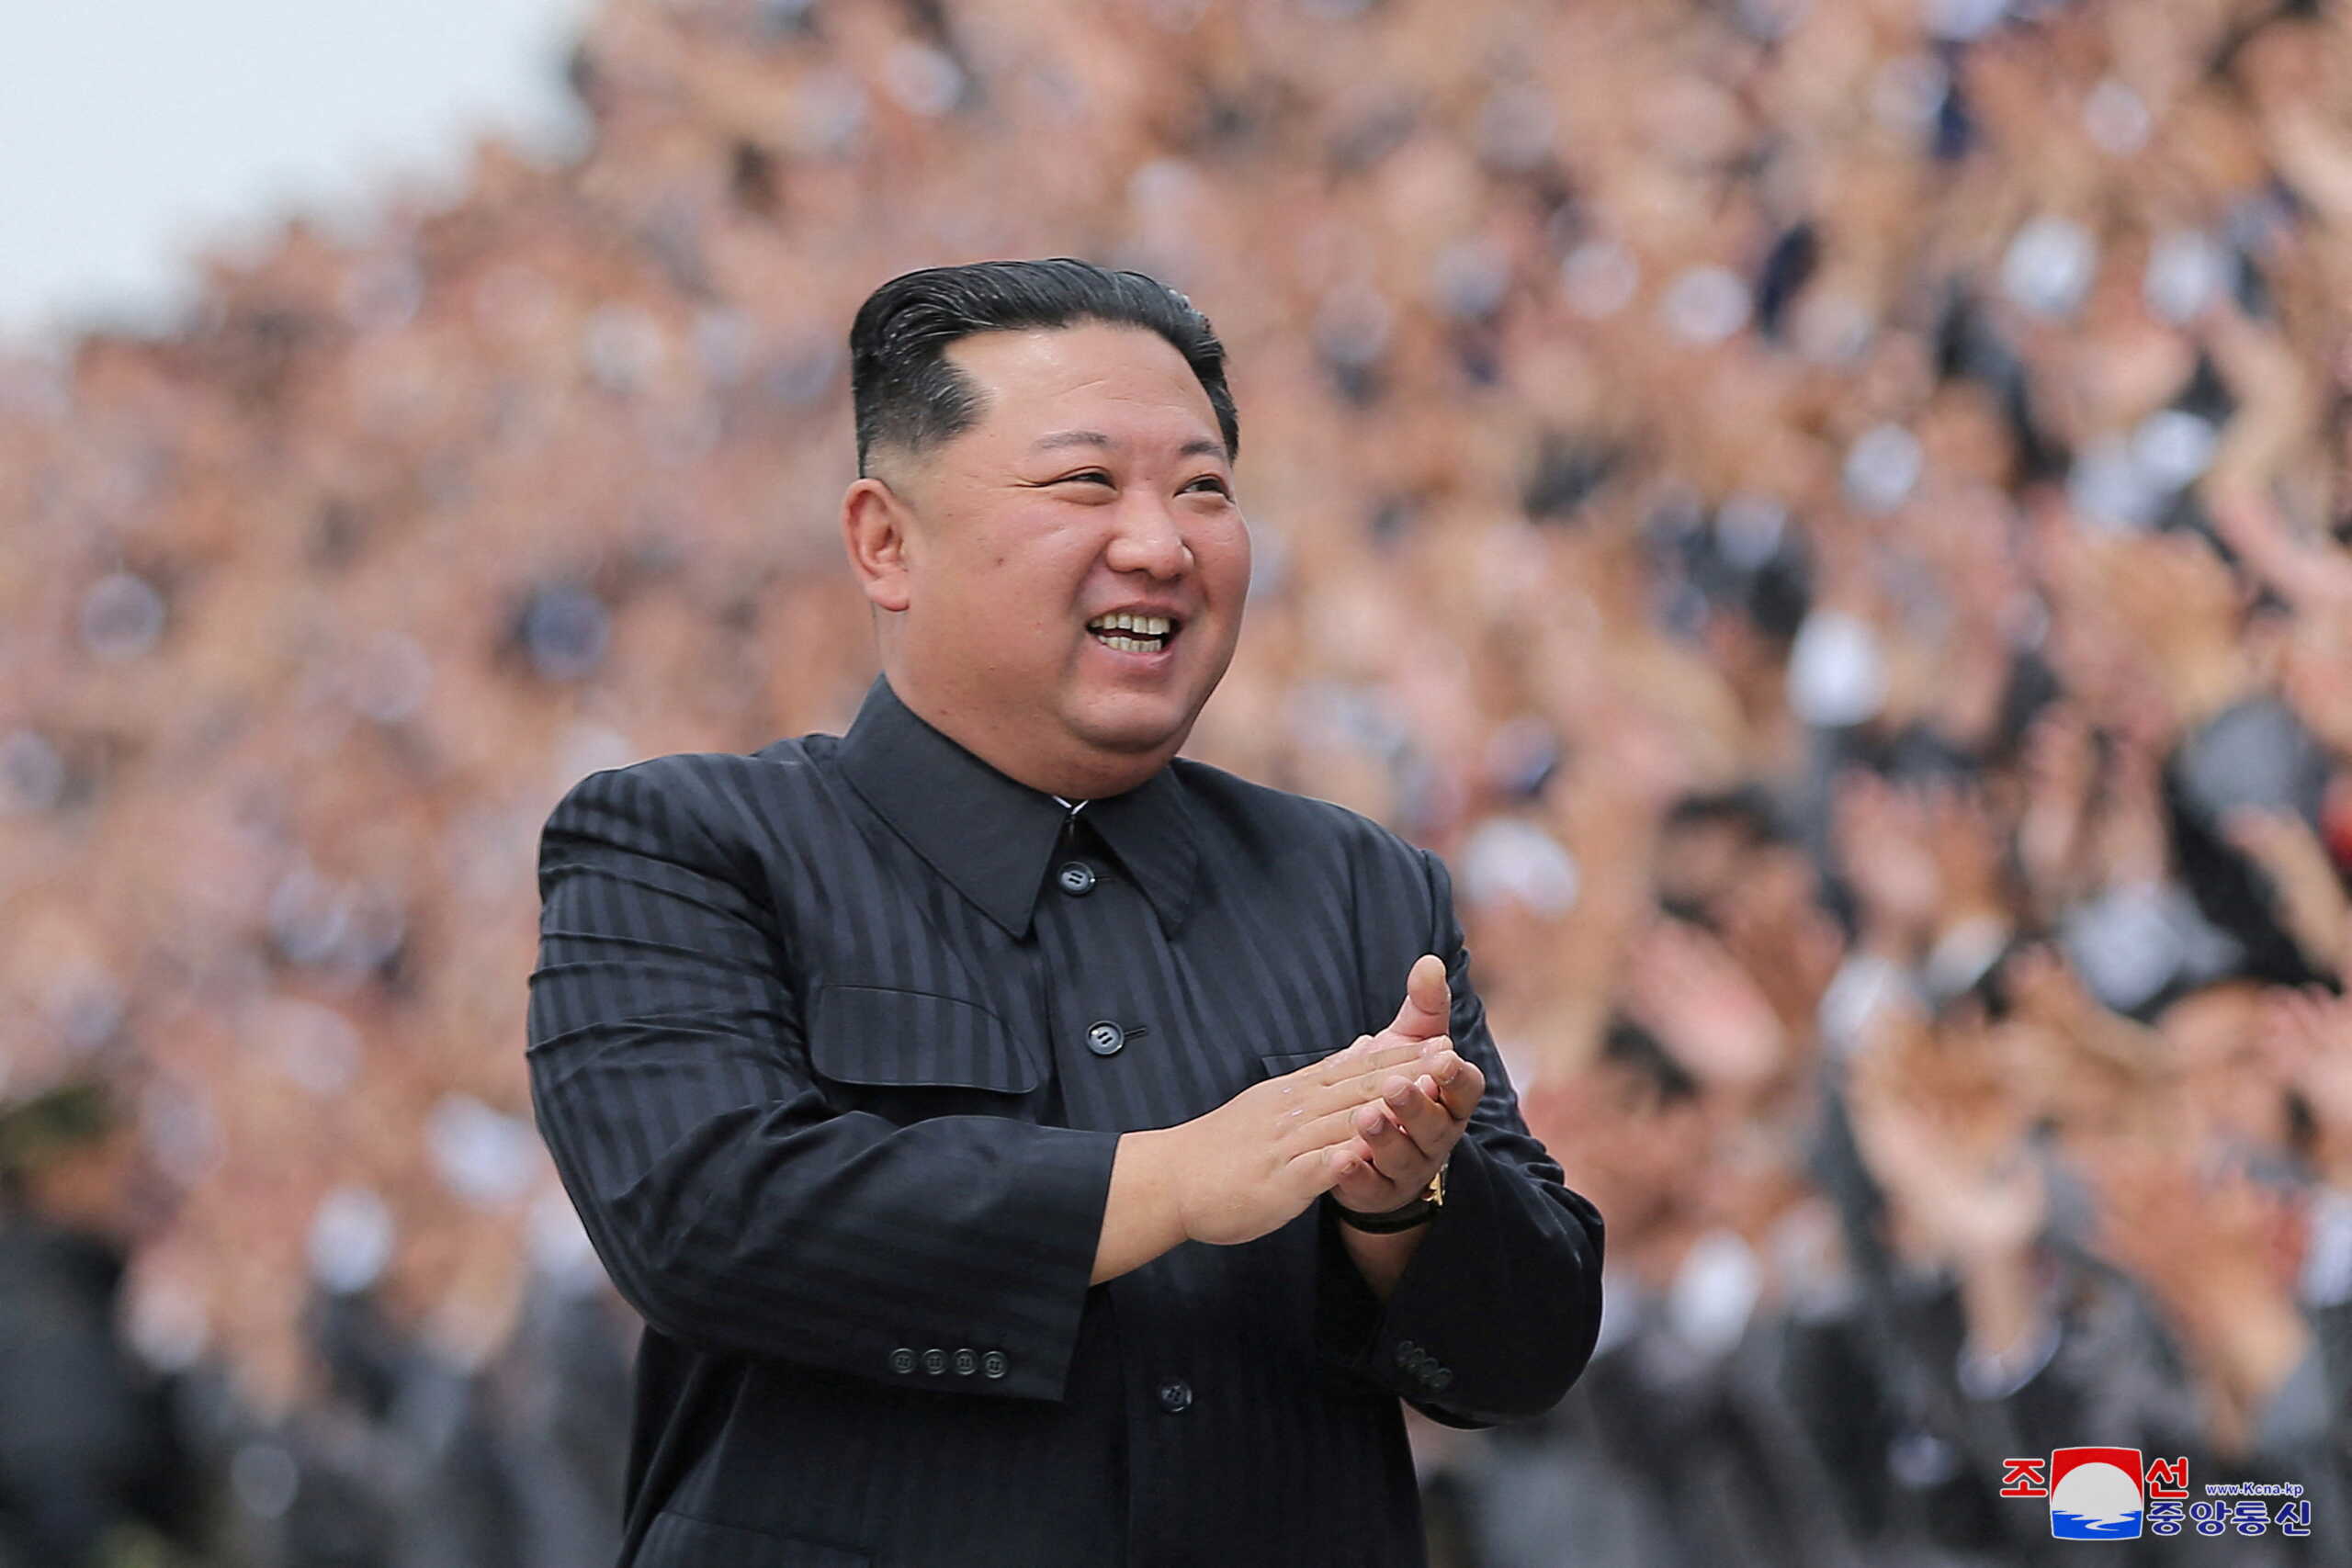 ΗΠΑ: «Η Βόρεια Κορέα μπορεί να είναι έτοιμη για πυρηνική δοκιμή αυτόν τον μήνα»